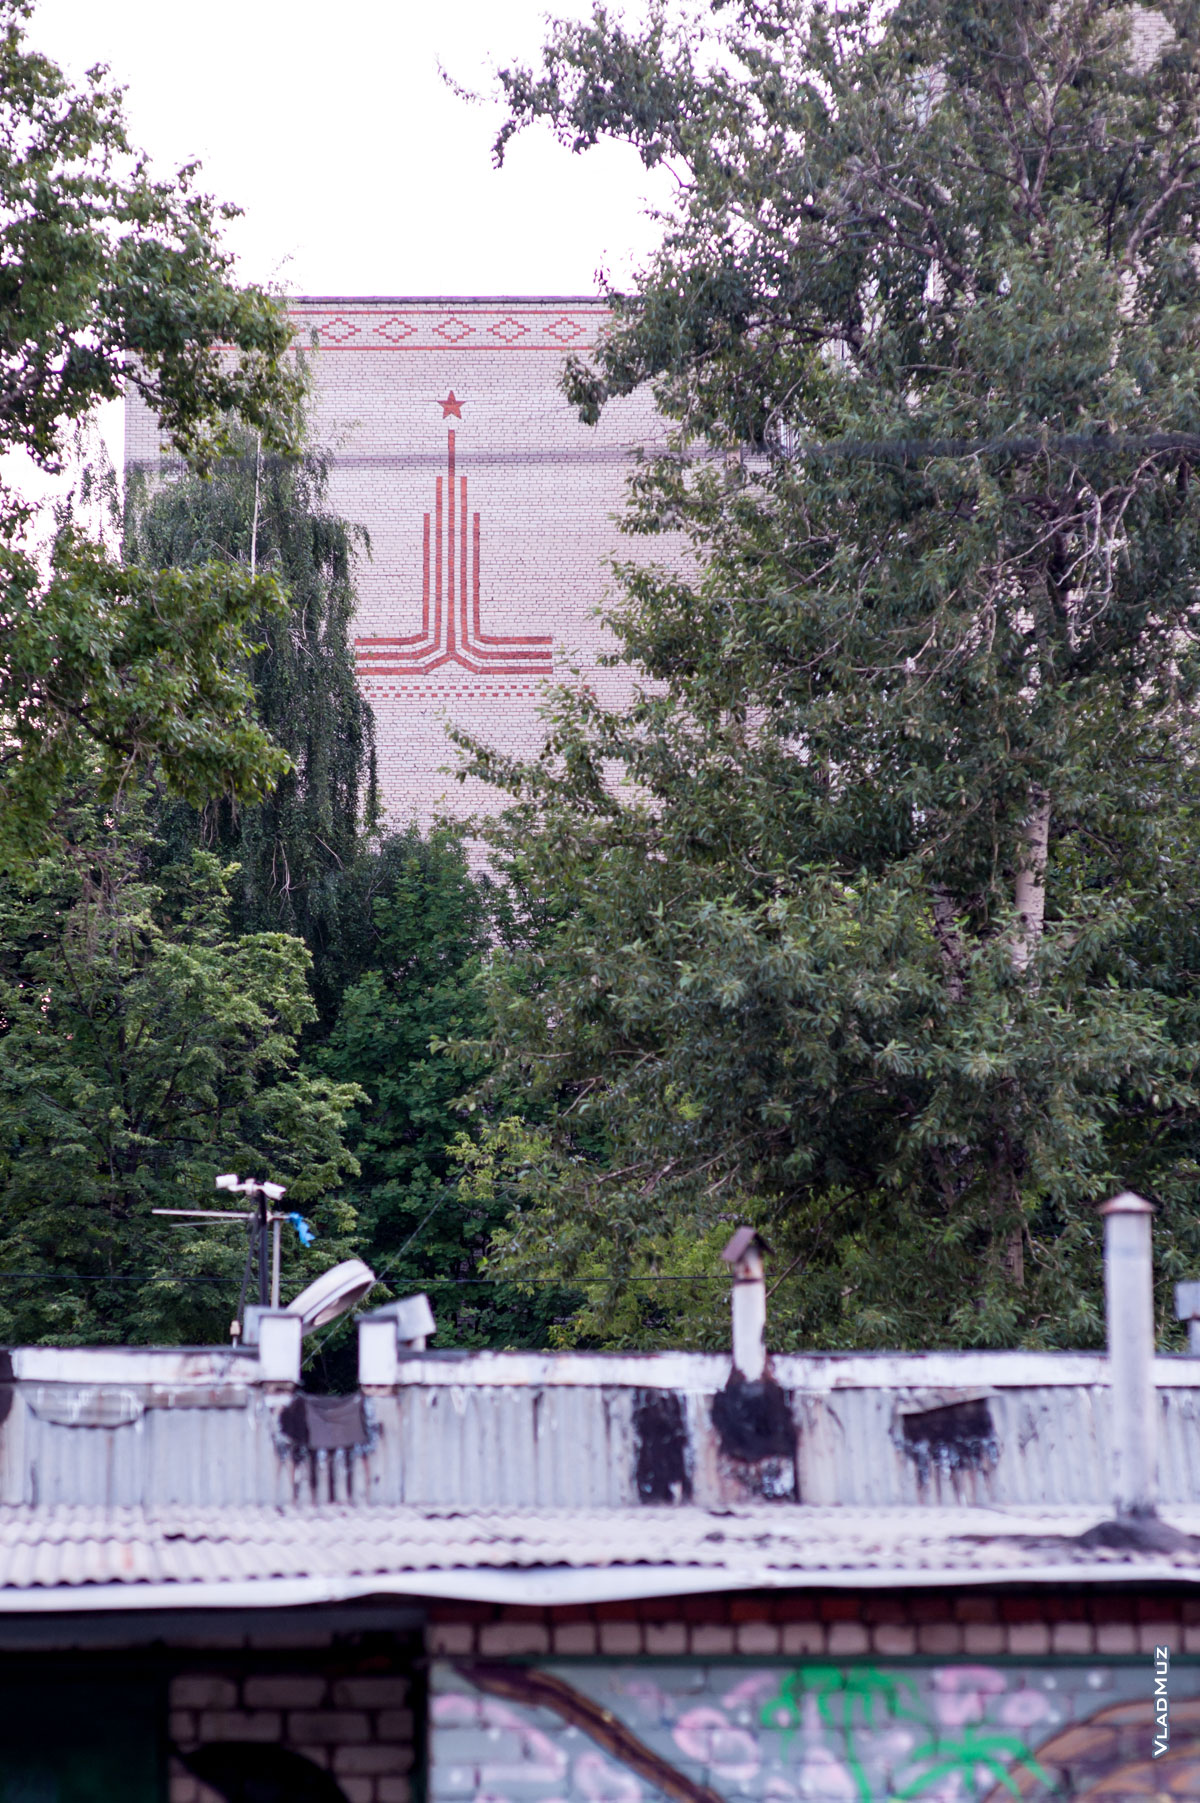 Фото эмблемы Олимпийских игр 1980 г. среди листвы на стене дома в г. Королёве Московской области